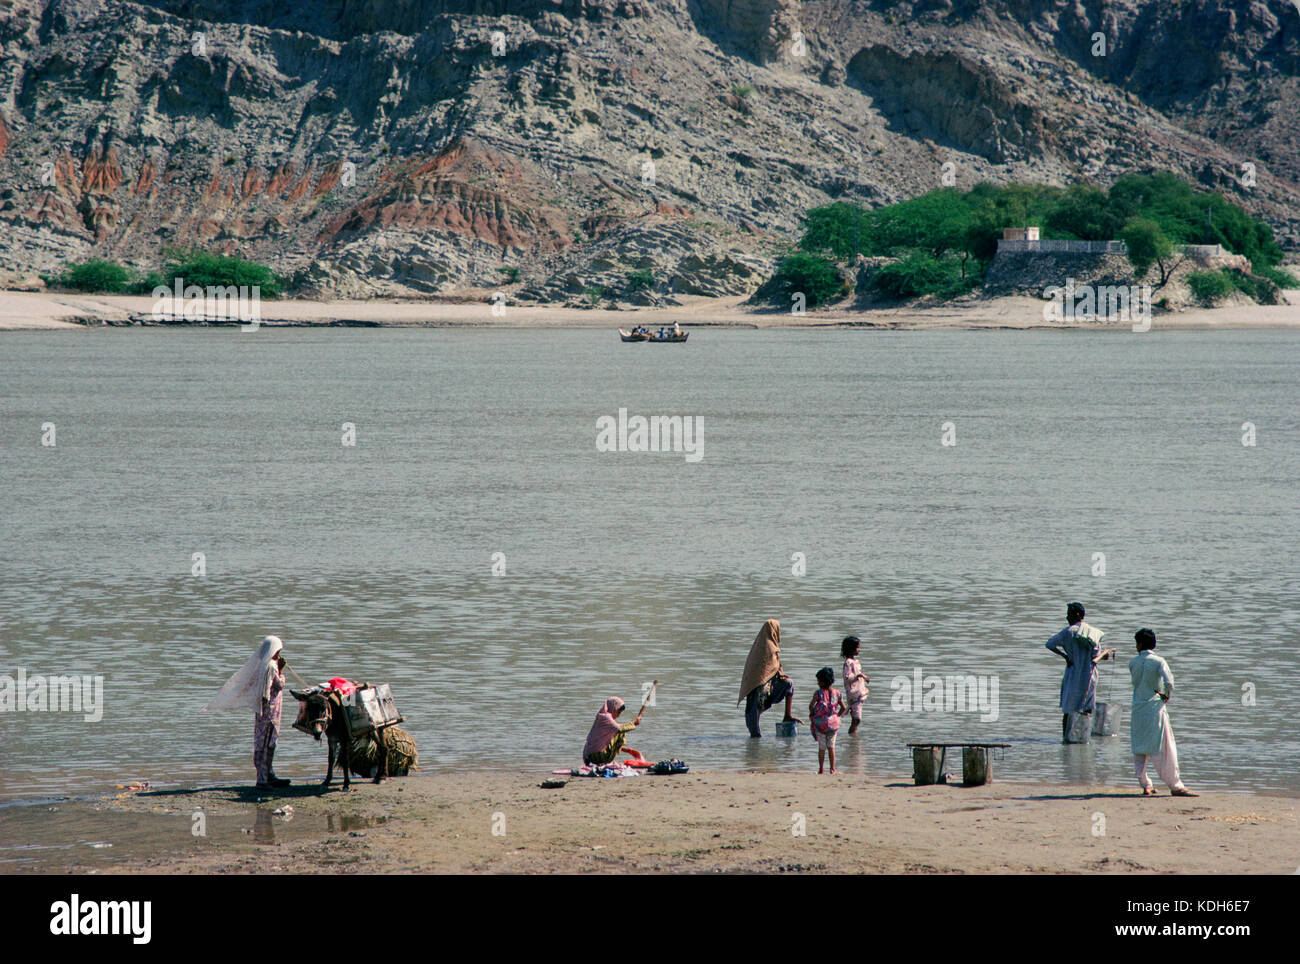 Les gens se lavent les vêtements et aller chercher de l'eau sur le fleuve Indus à Hund, province de Khyber Pakhtunkhwa, au Pakistan. Banque D'Images